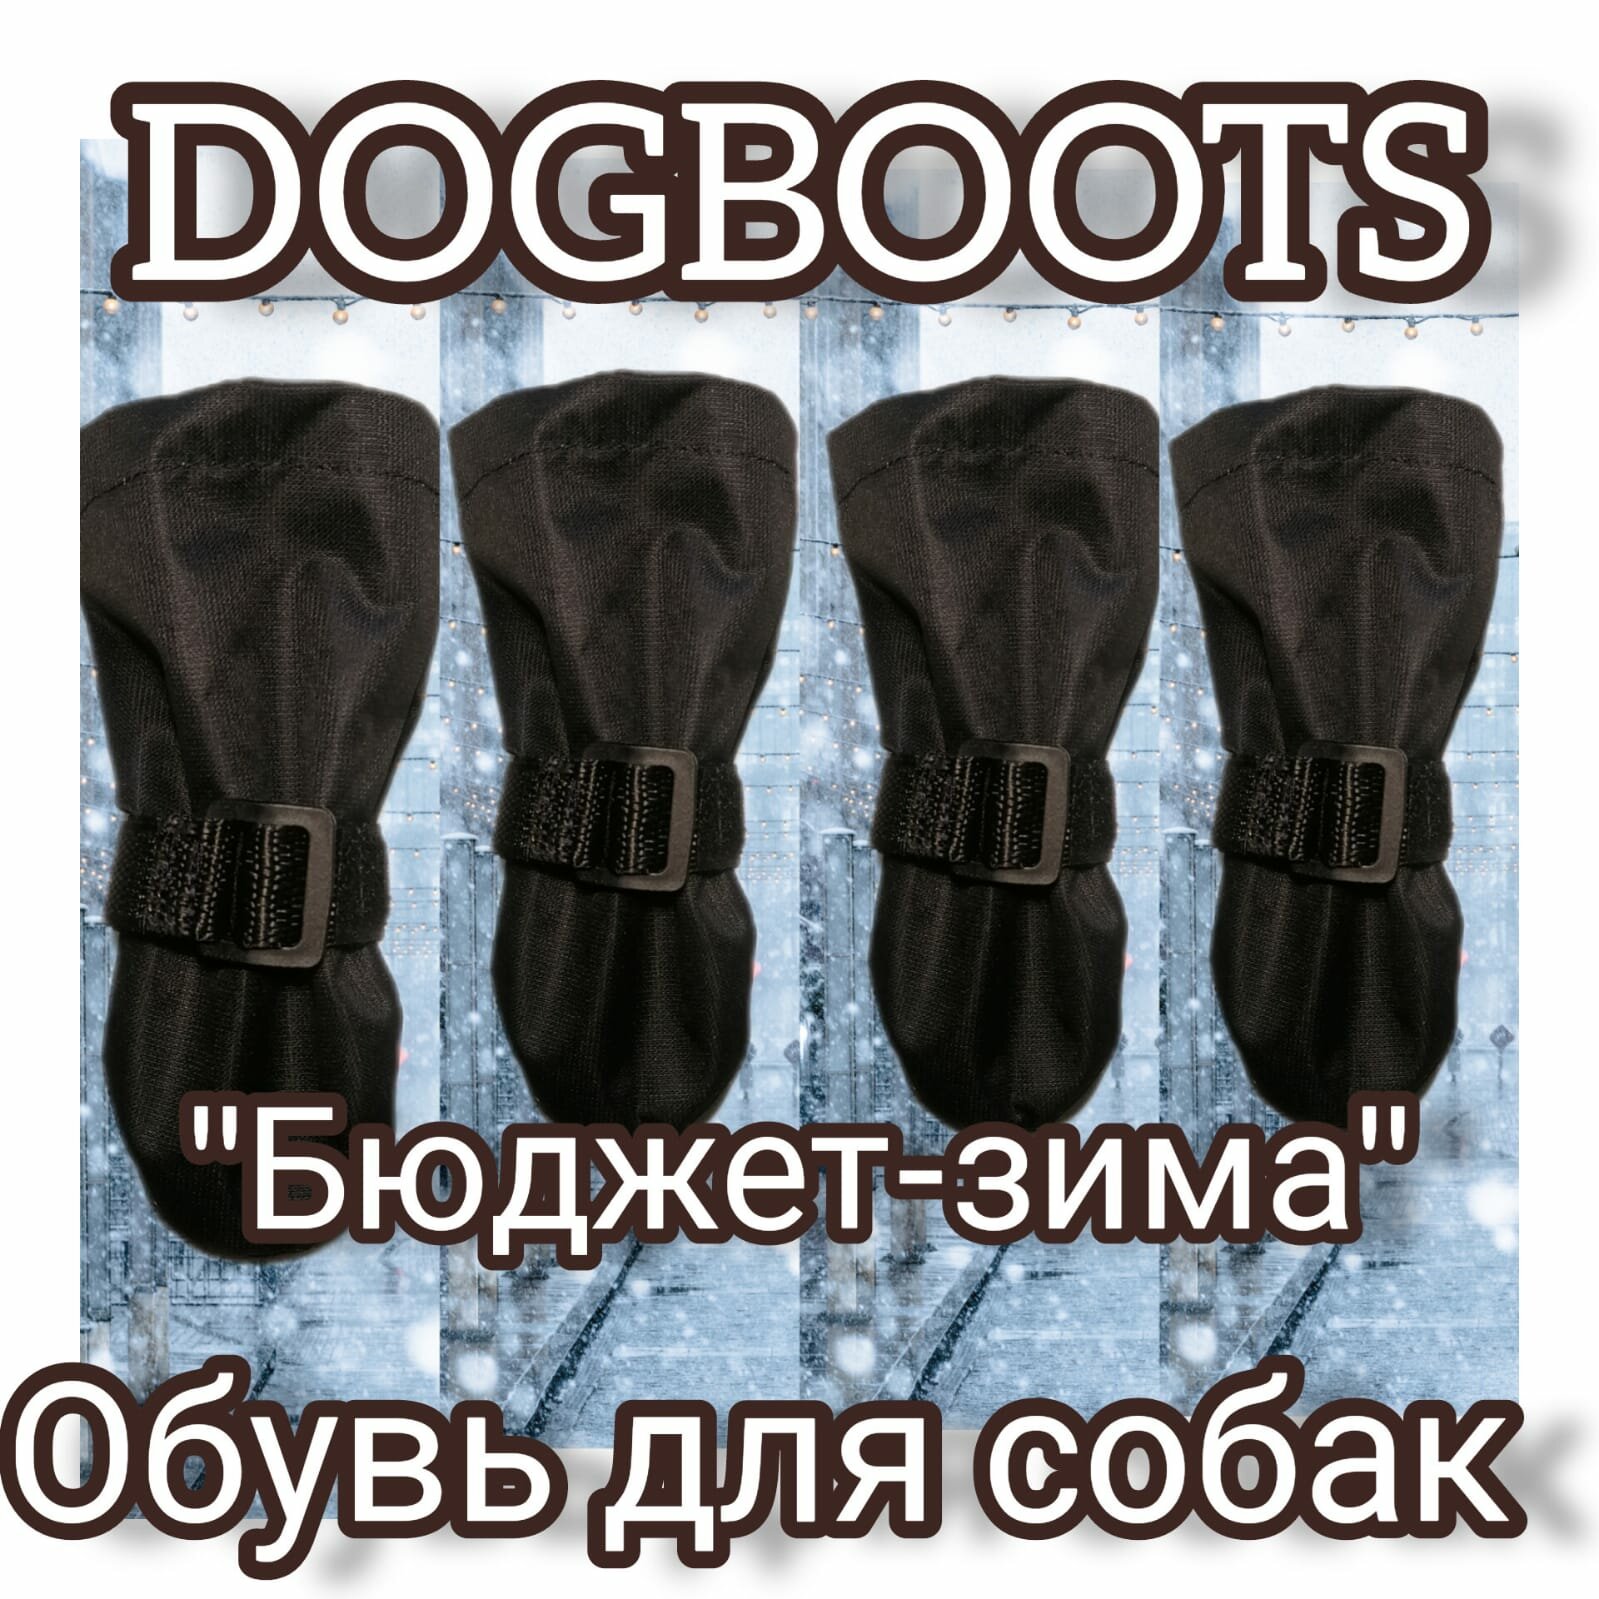 "Зимние ботинки для собак" - бюджетная модель от бренда Dogboots №3, черные, S